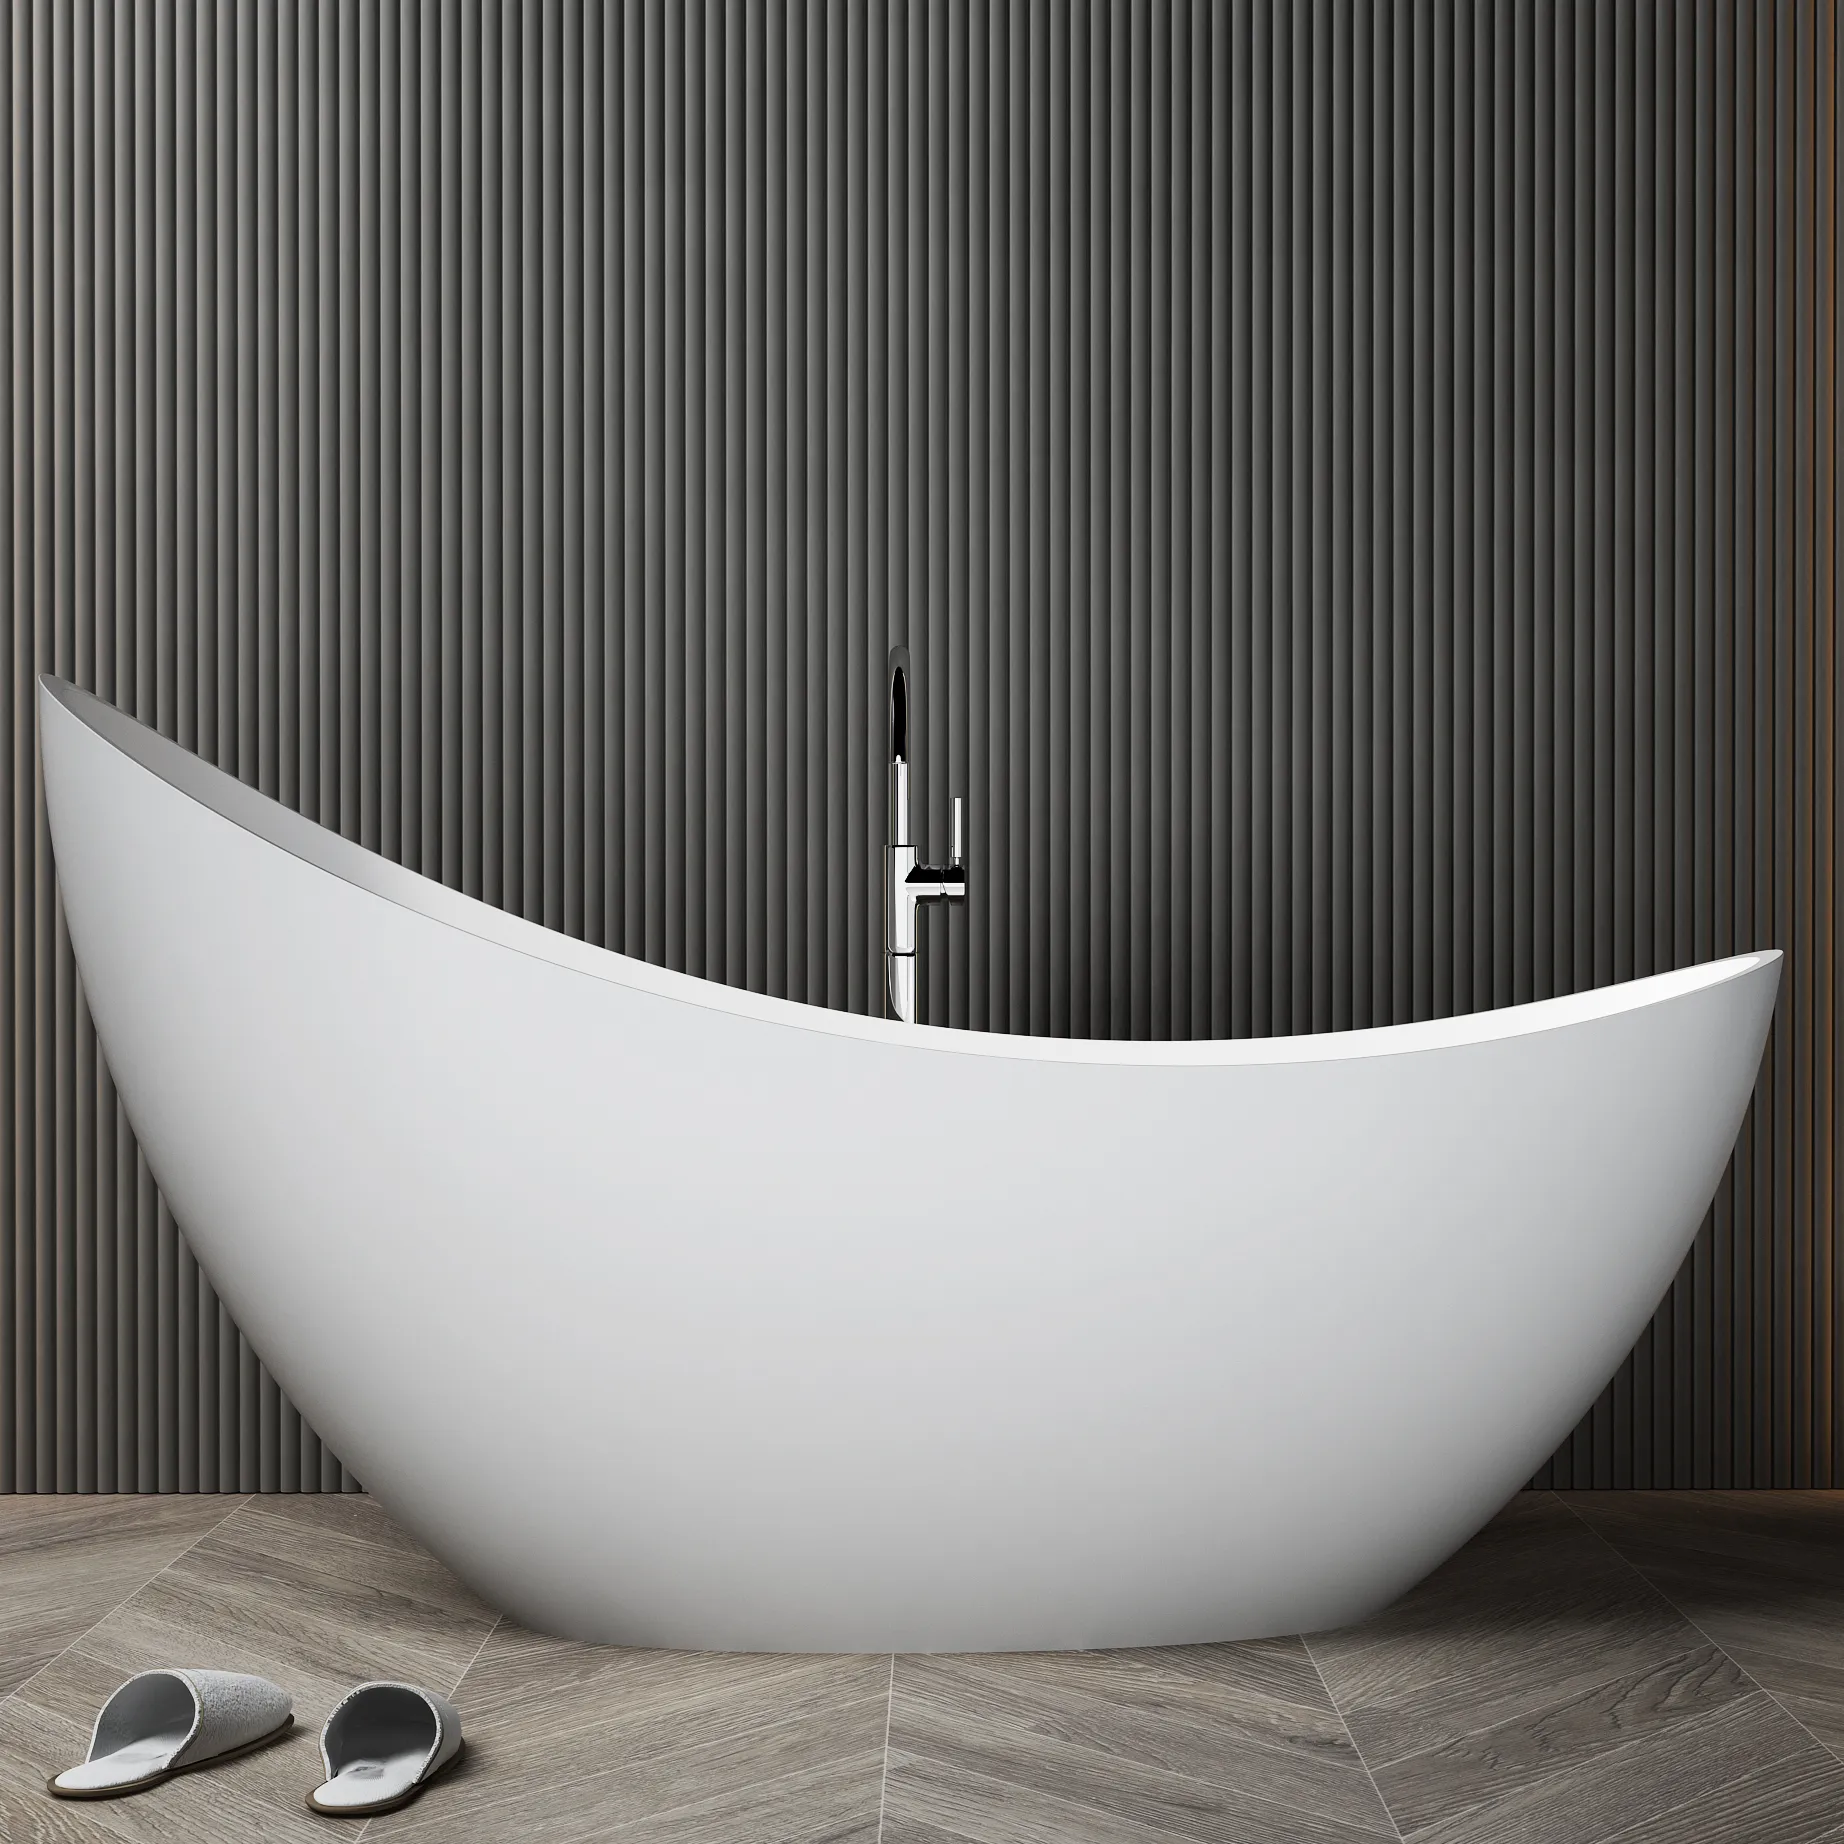 פופולרי מורדן אמנות אמבטיה שרף אבן אמבטיה עצמית הספגה אבן מלאכותית מאט לבן מודרני מלון מרכז מייבש 1.7 מ'